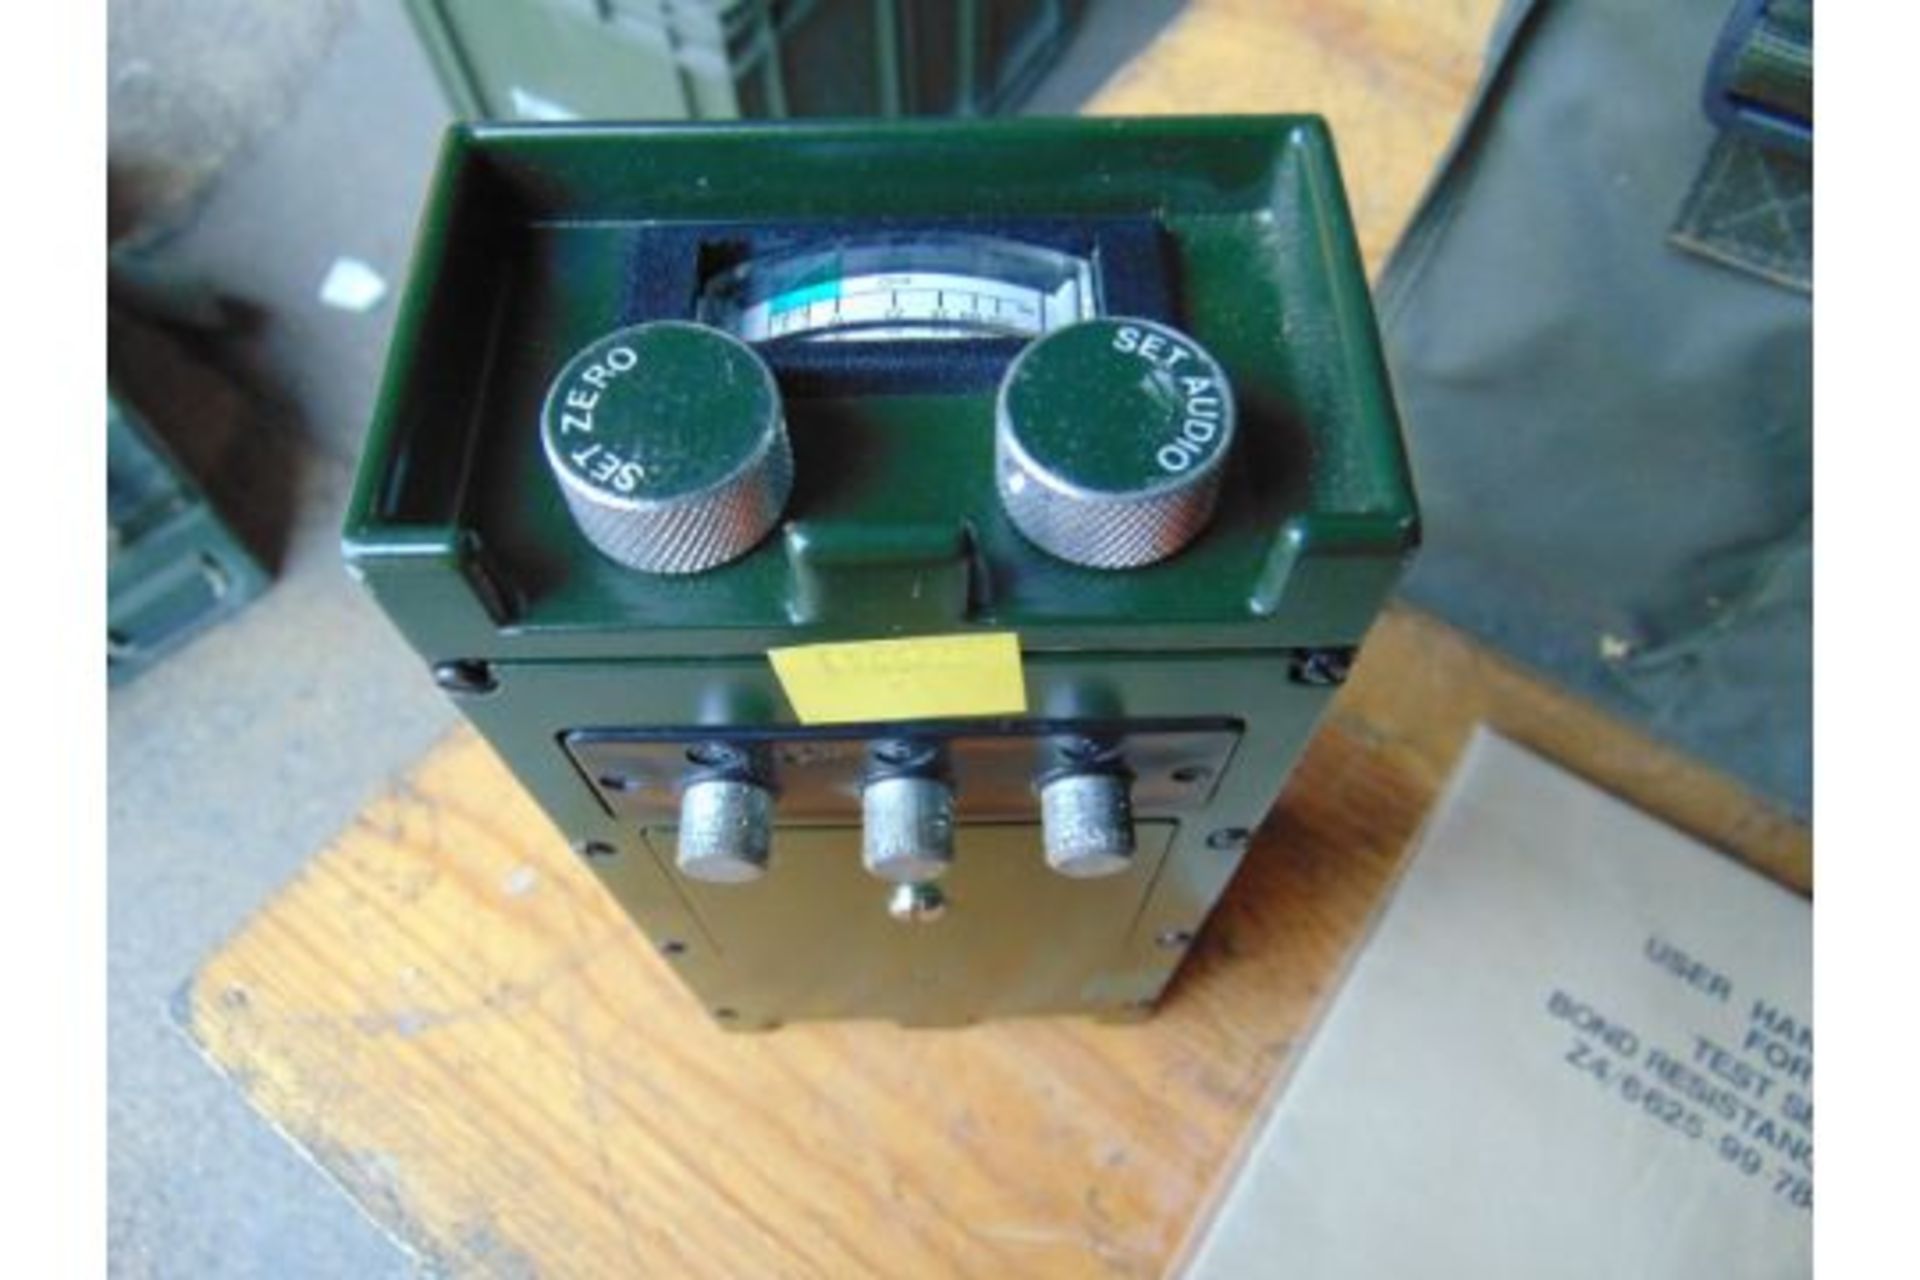 Dytecna DT109 Bond Resistance Tester Kit - Image 3 of 7